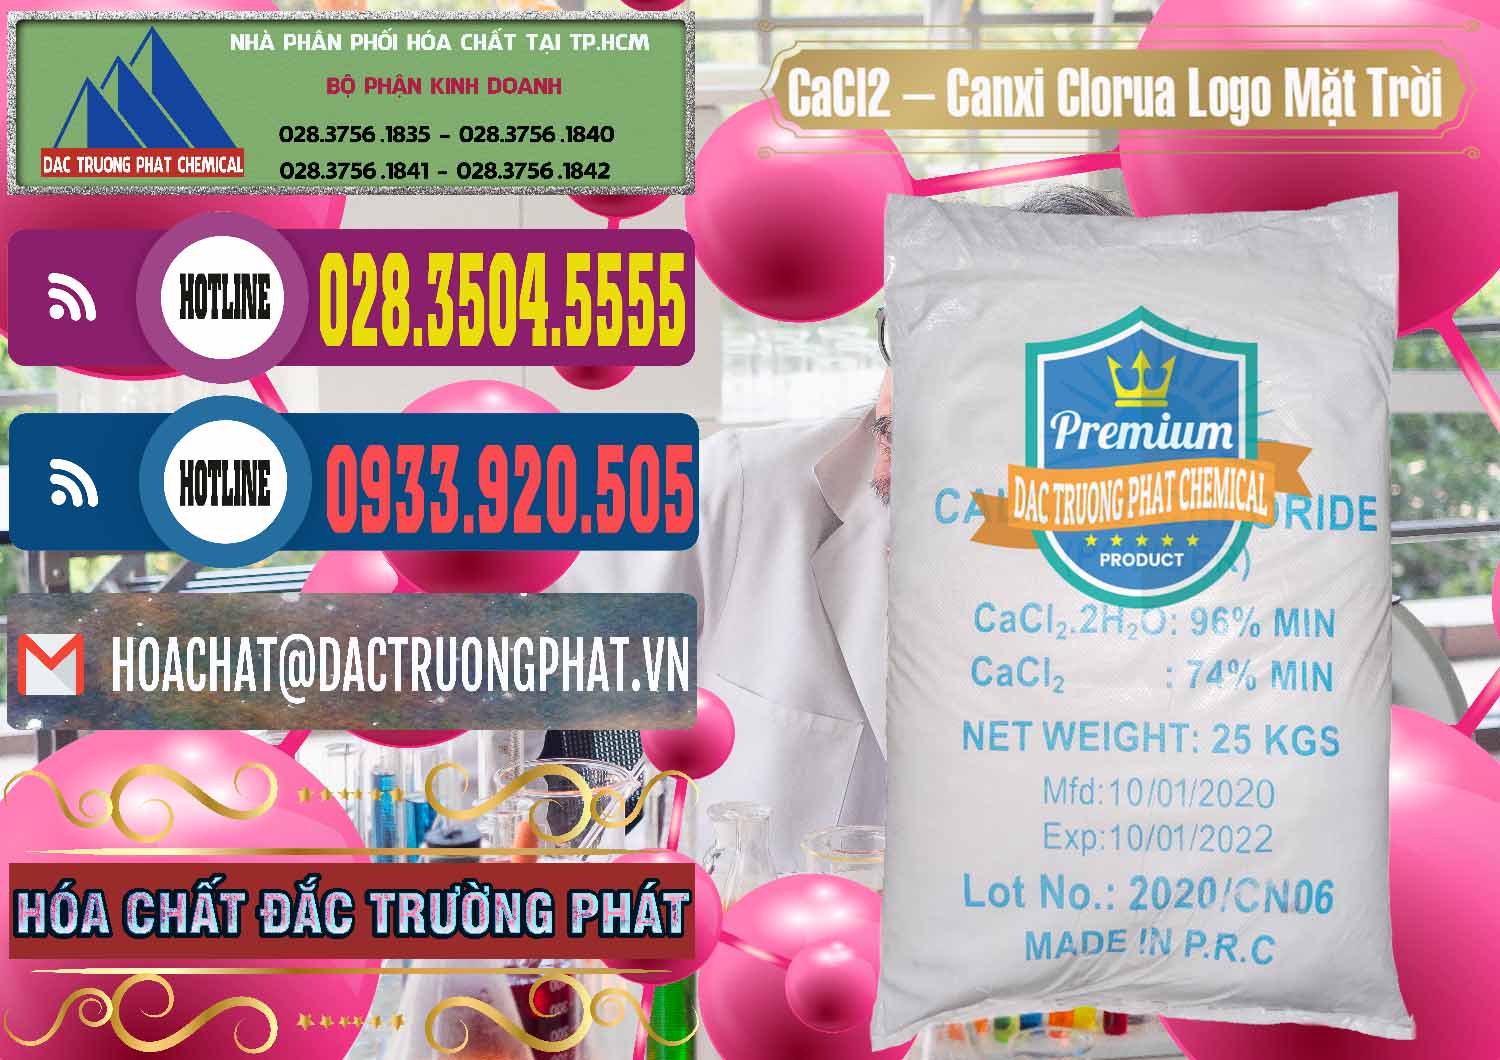 Công ty chuyên nhập khẩu - bán CaCl2 – Canxi Clorua 96% Logo Mặt Trời Trung Quốc China - 0041 - Công ty chuyên phân phối và cung ứng hóa chất tại TP.HCM - muabanhoachat.com.vn